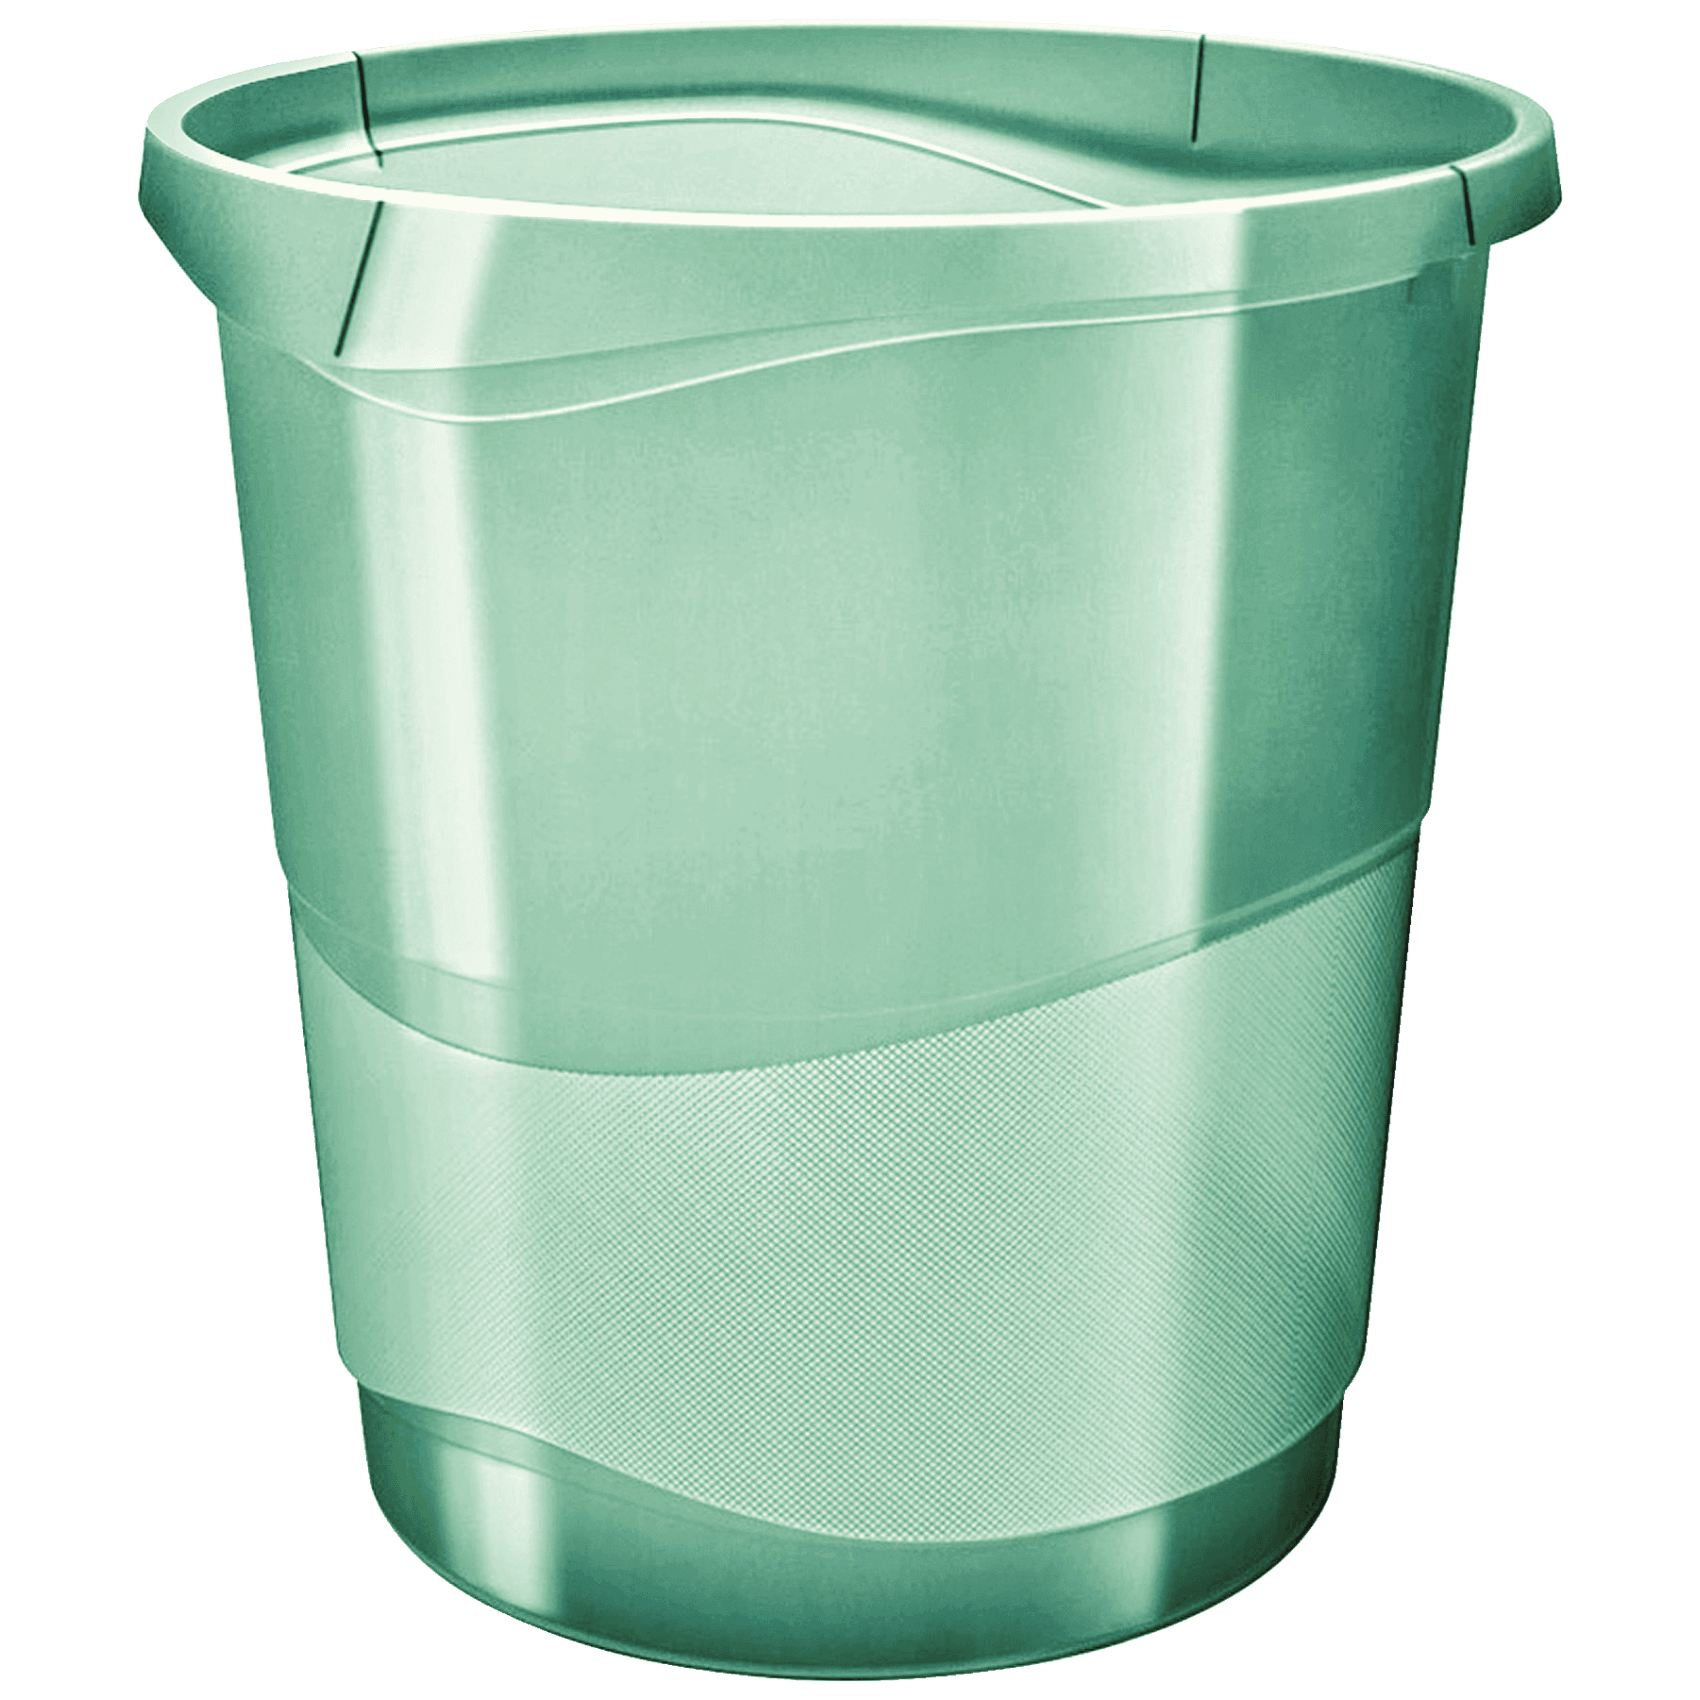 Odpadkový koš Esselte Colour'Ice, průhledná zelená, 14 l